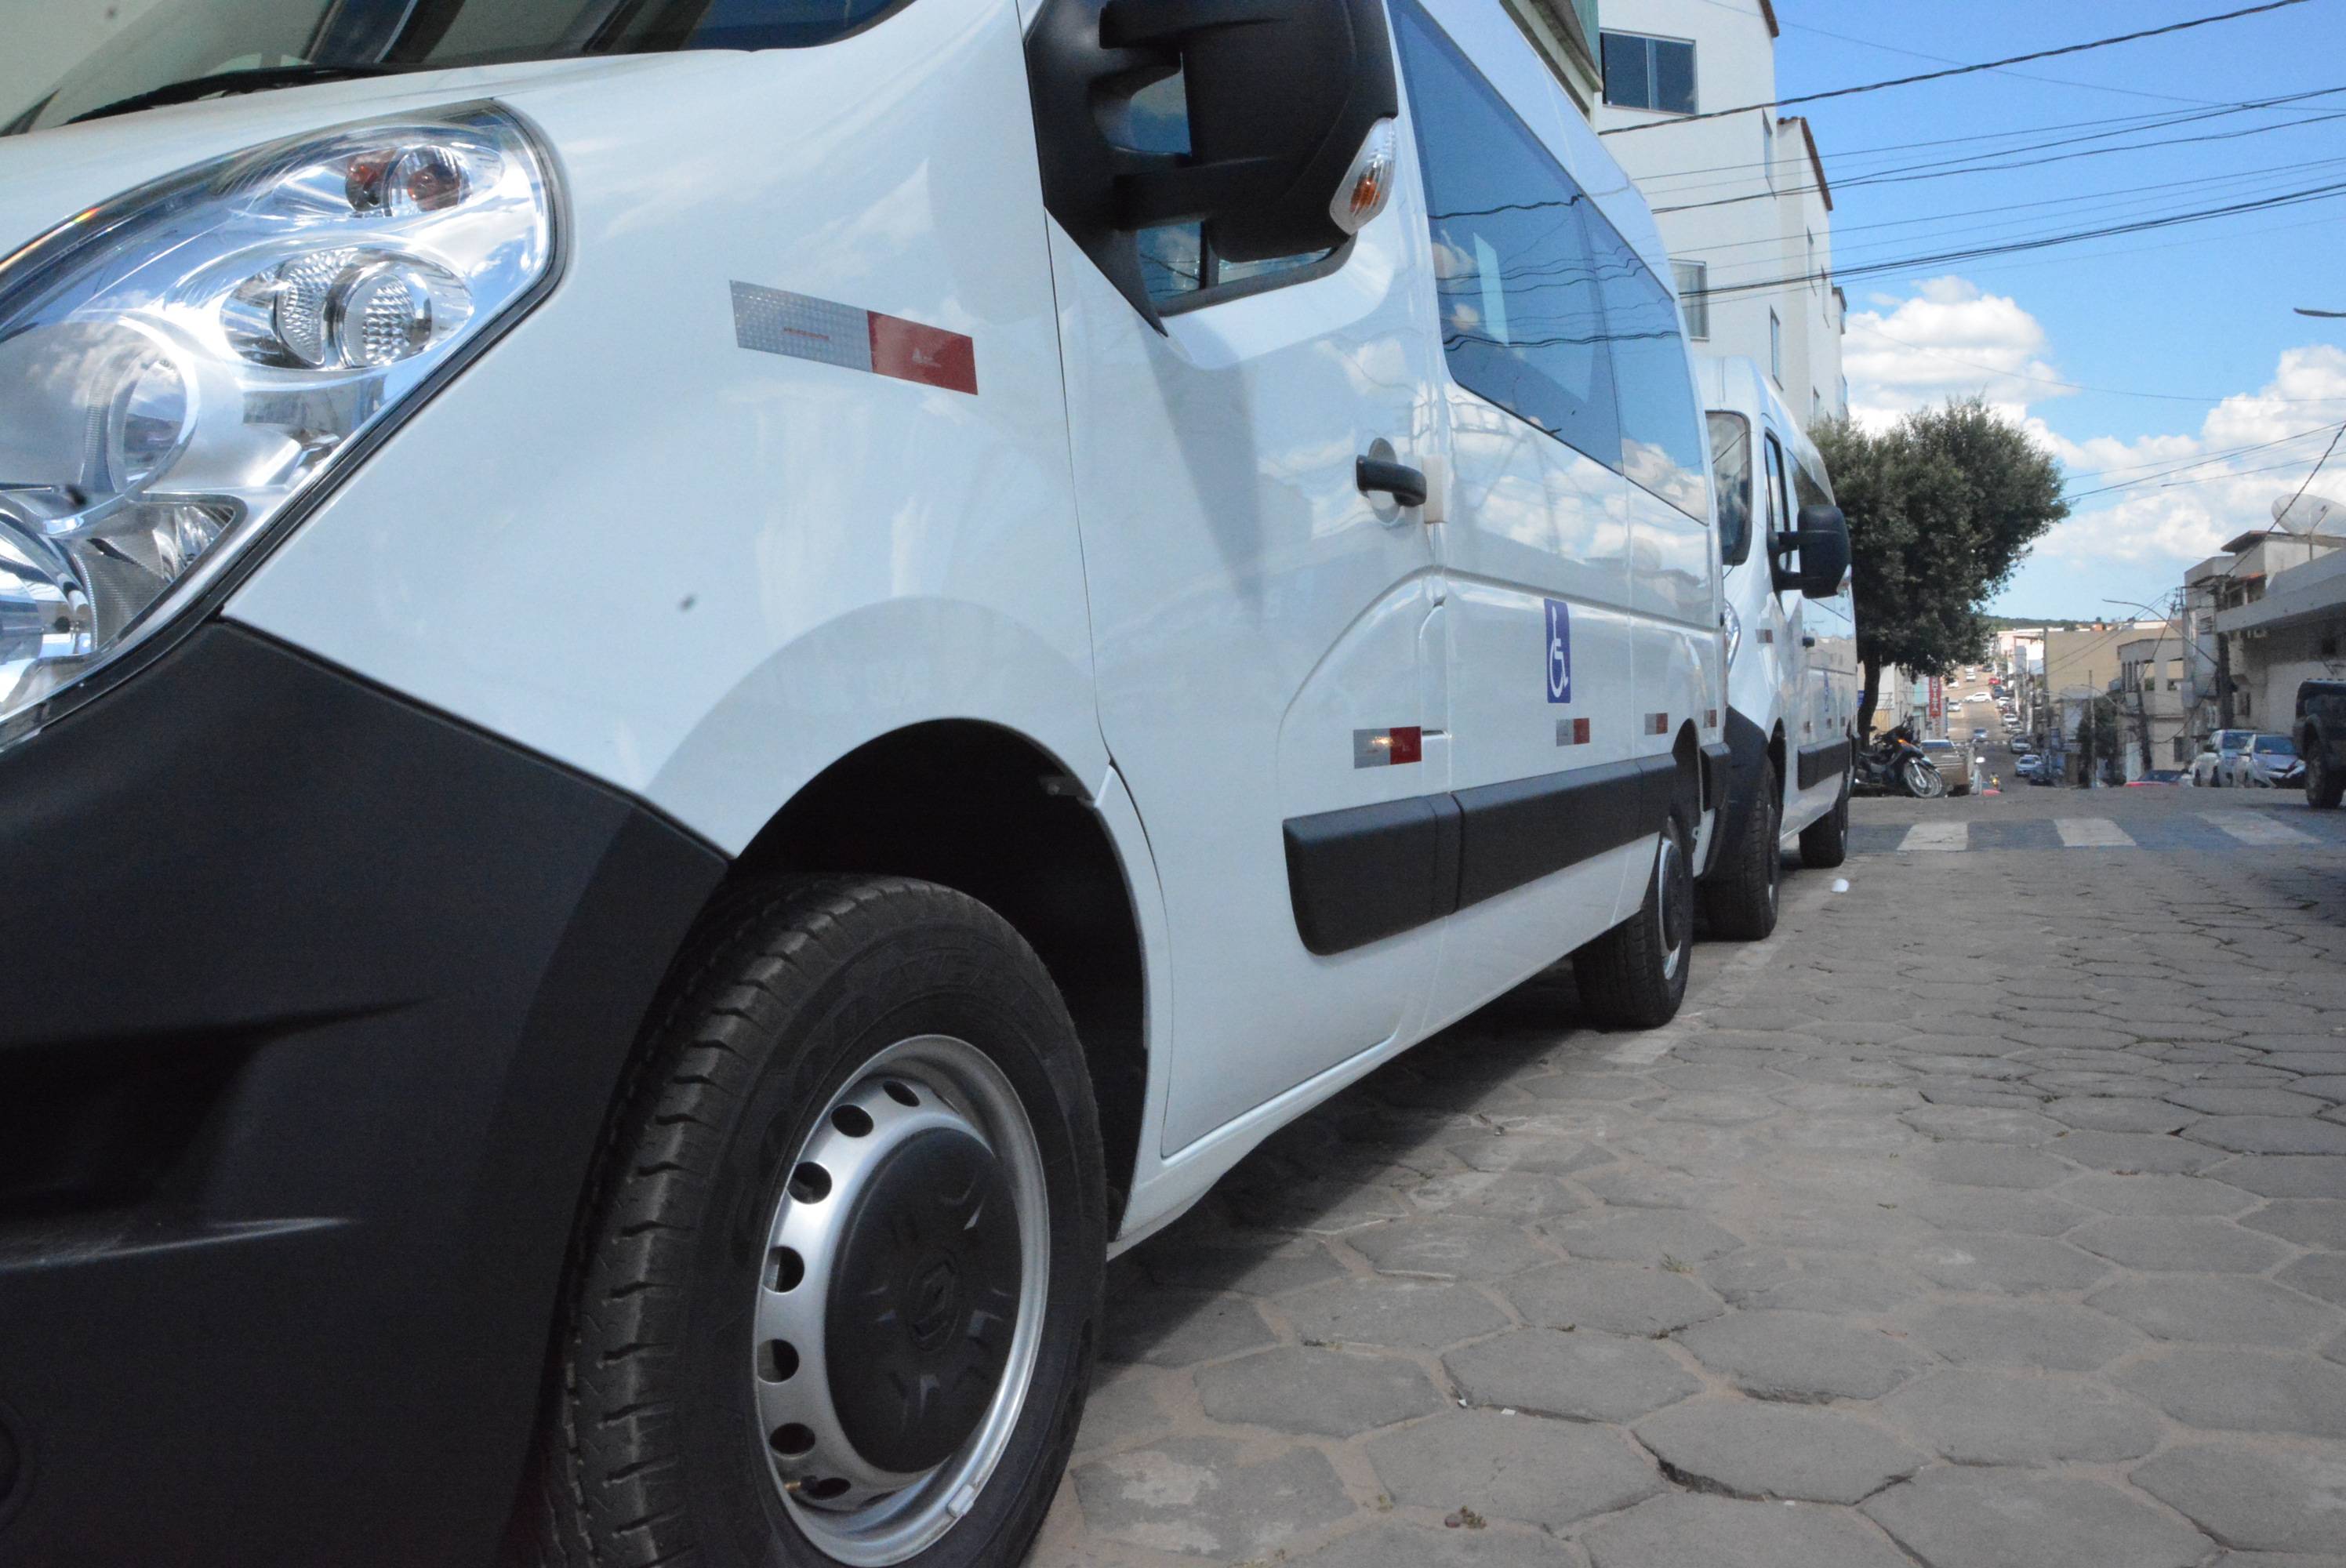 Com chegada de duas novas vans, frota municipal de veículos da saúde fica cada vez mais renovada